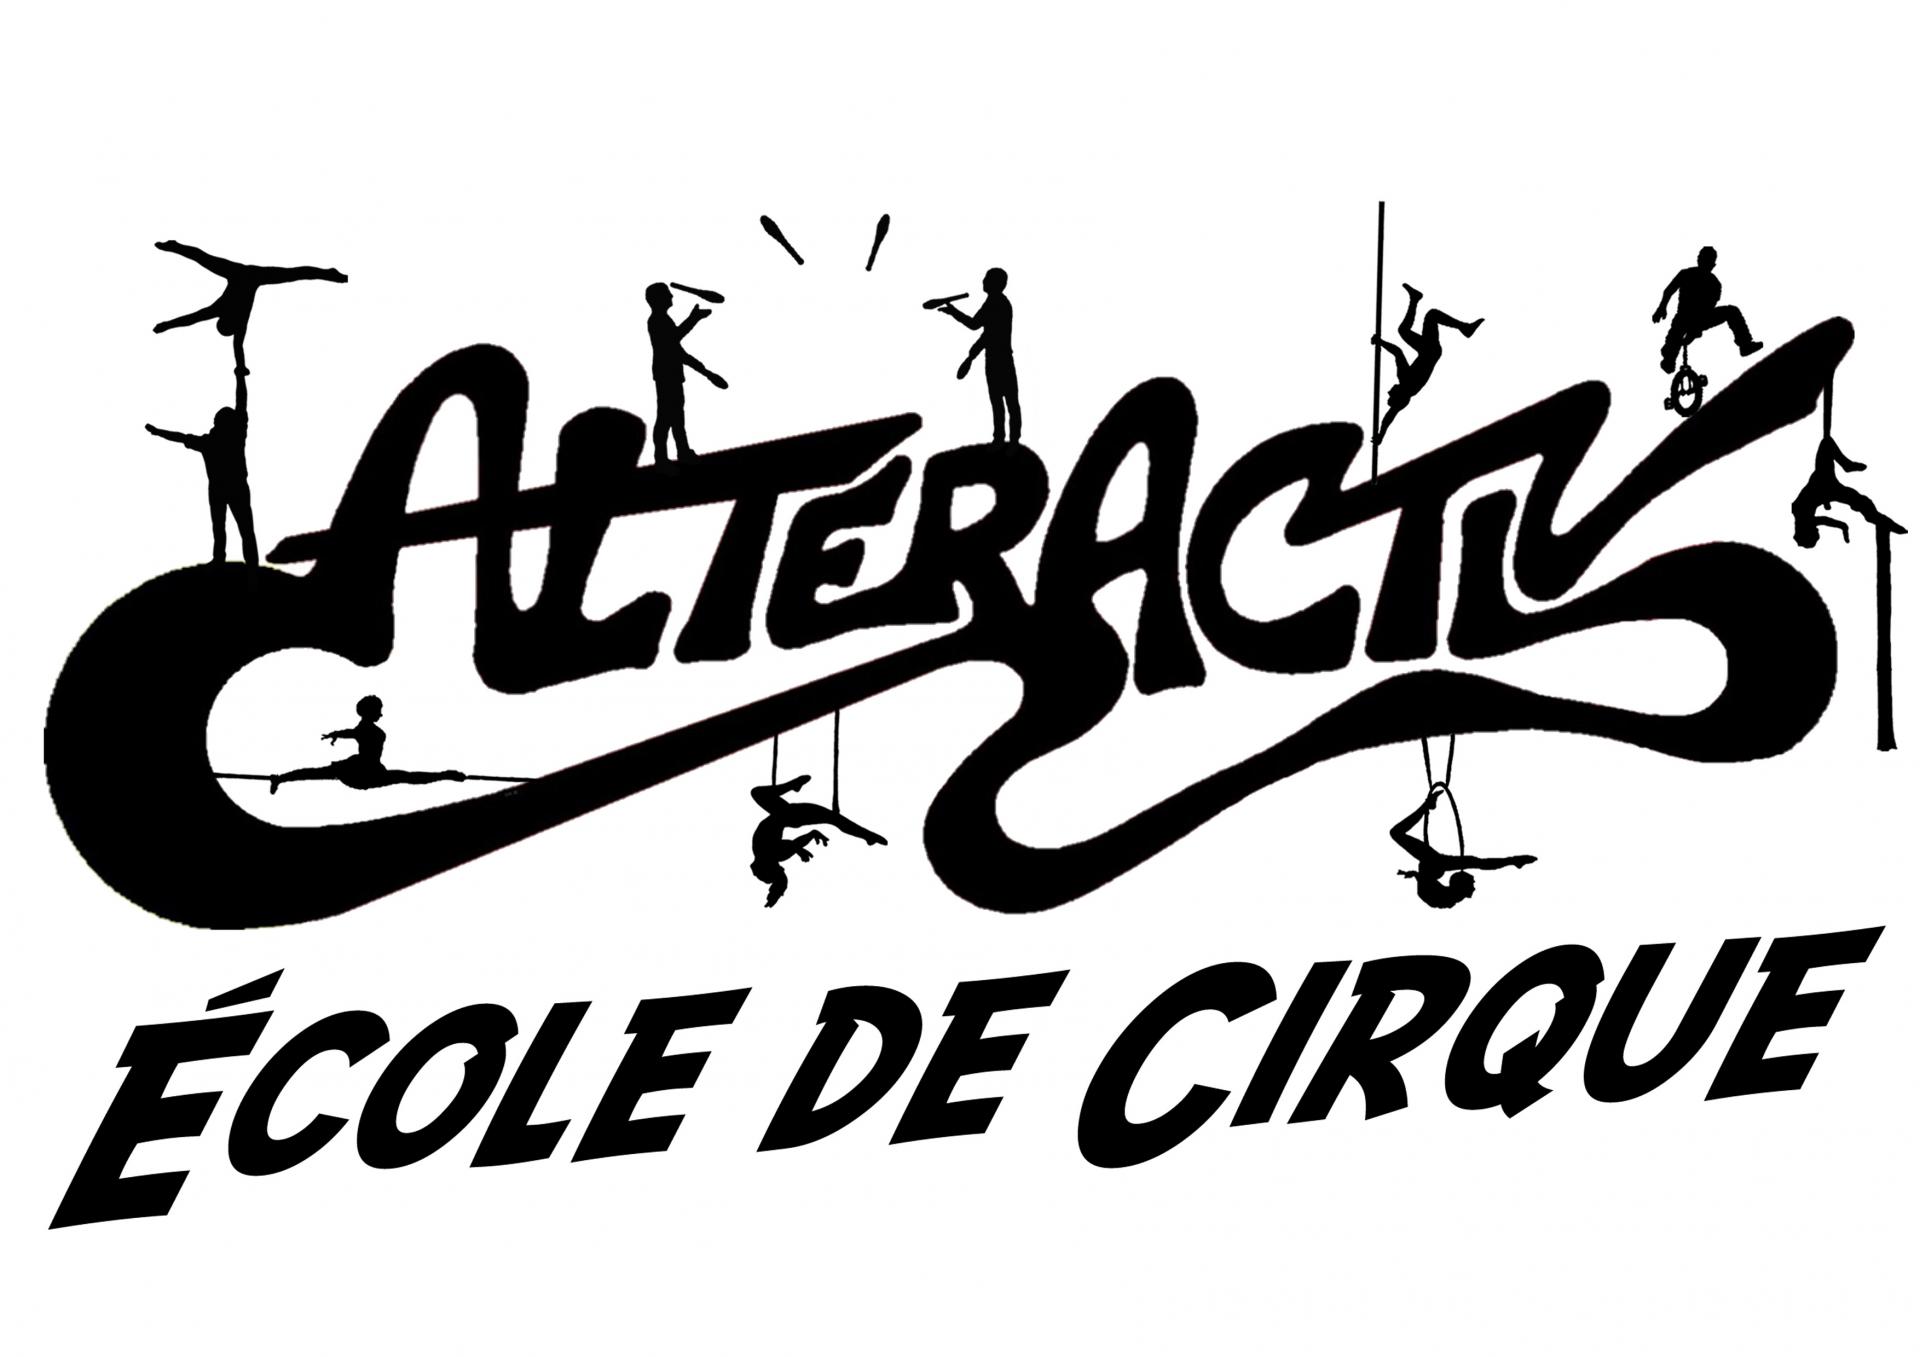 Alteractiv ecole de cirque logo